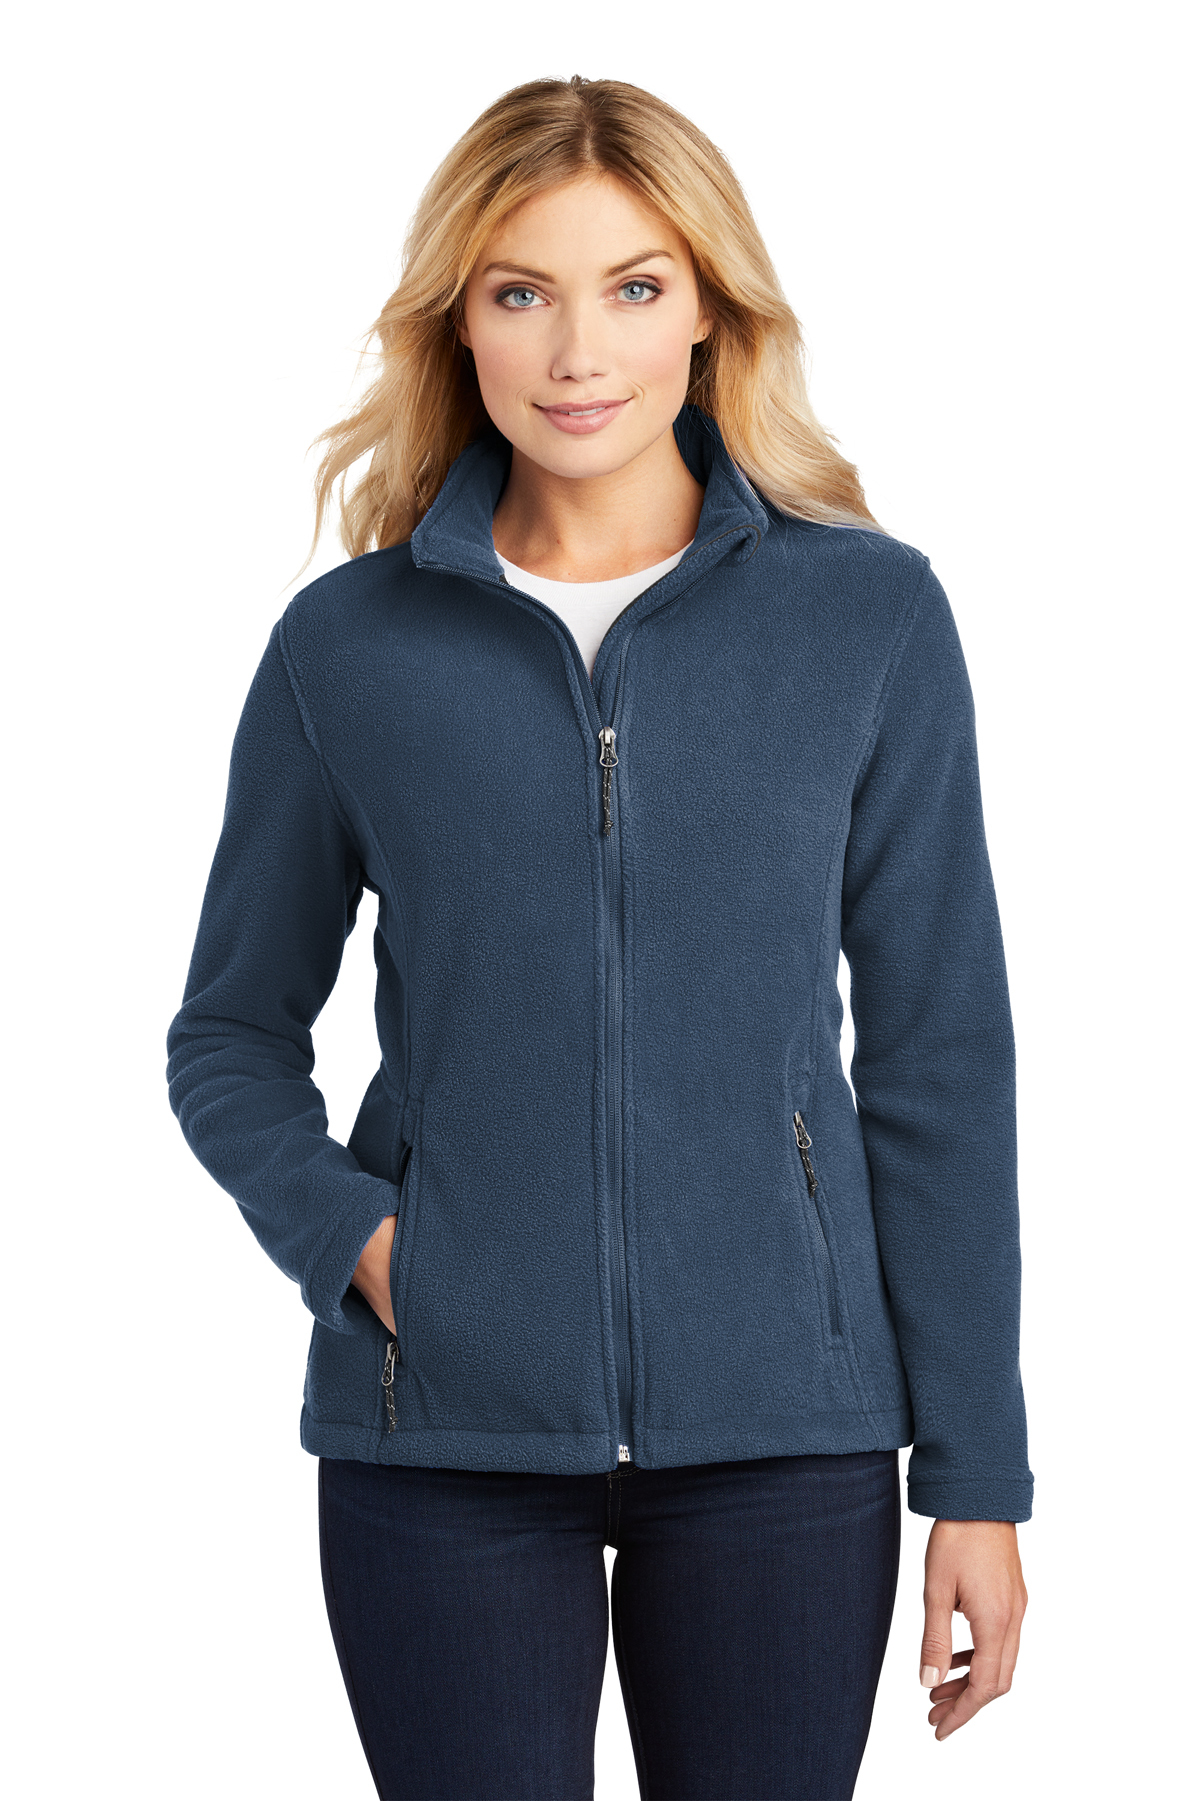 Port Authority Embroidered Women's Value Fleece Jacket - Queensboro